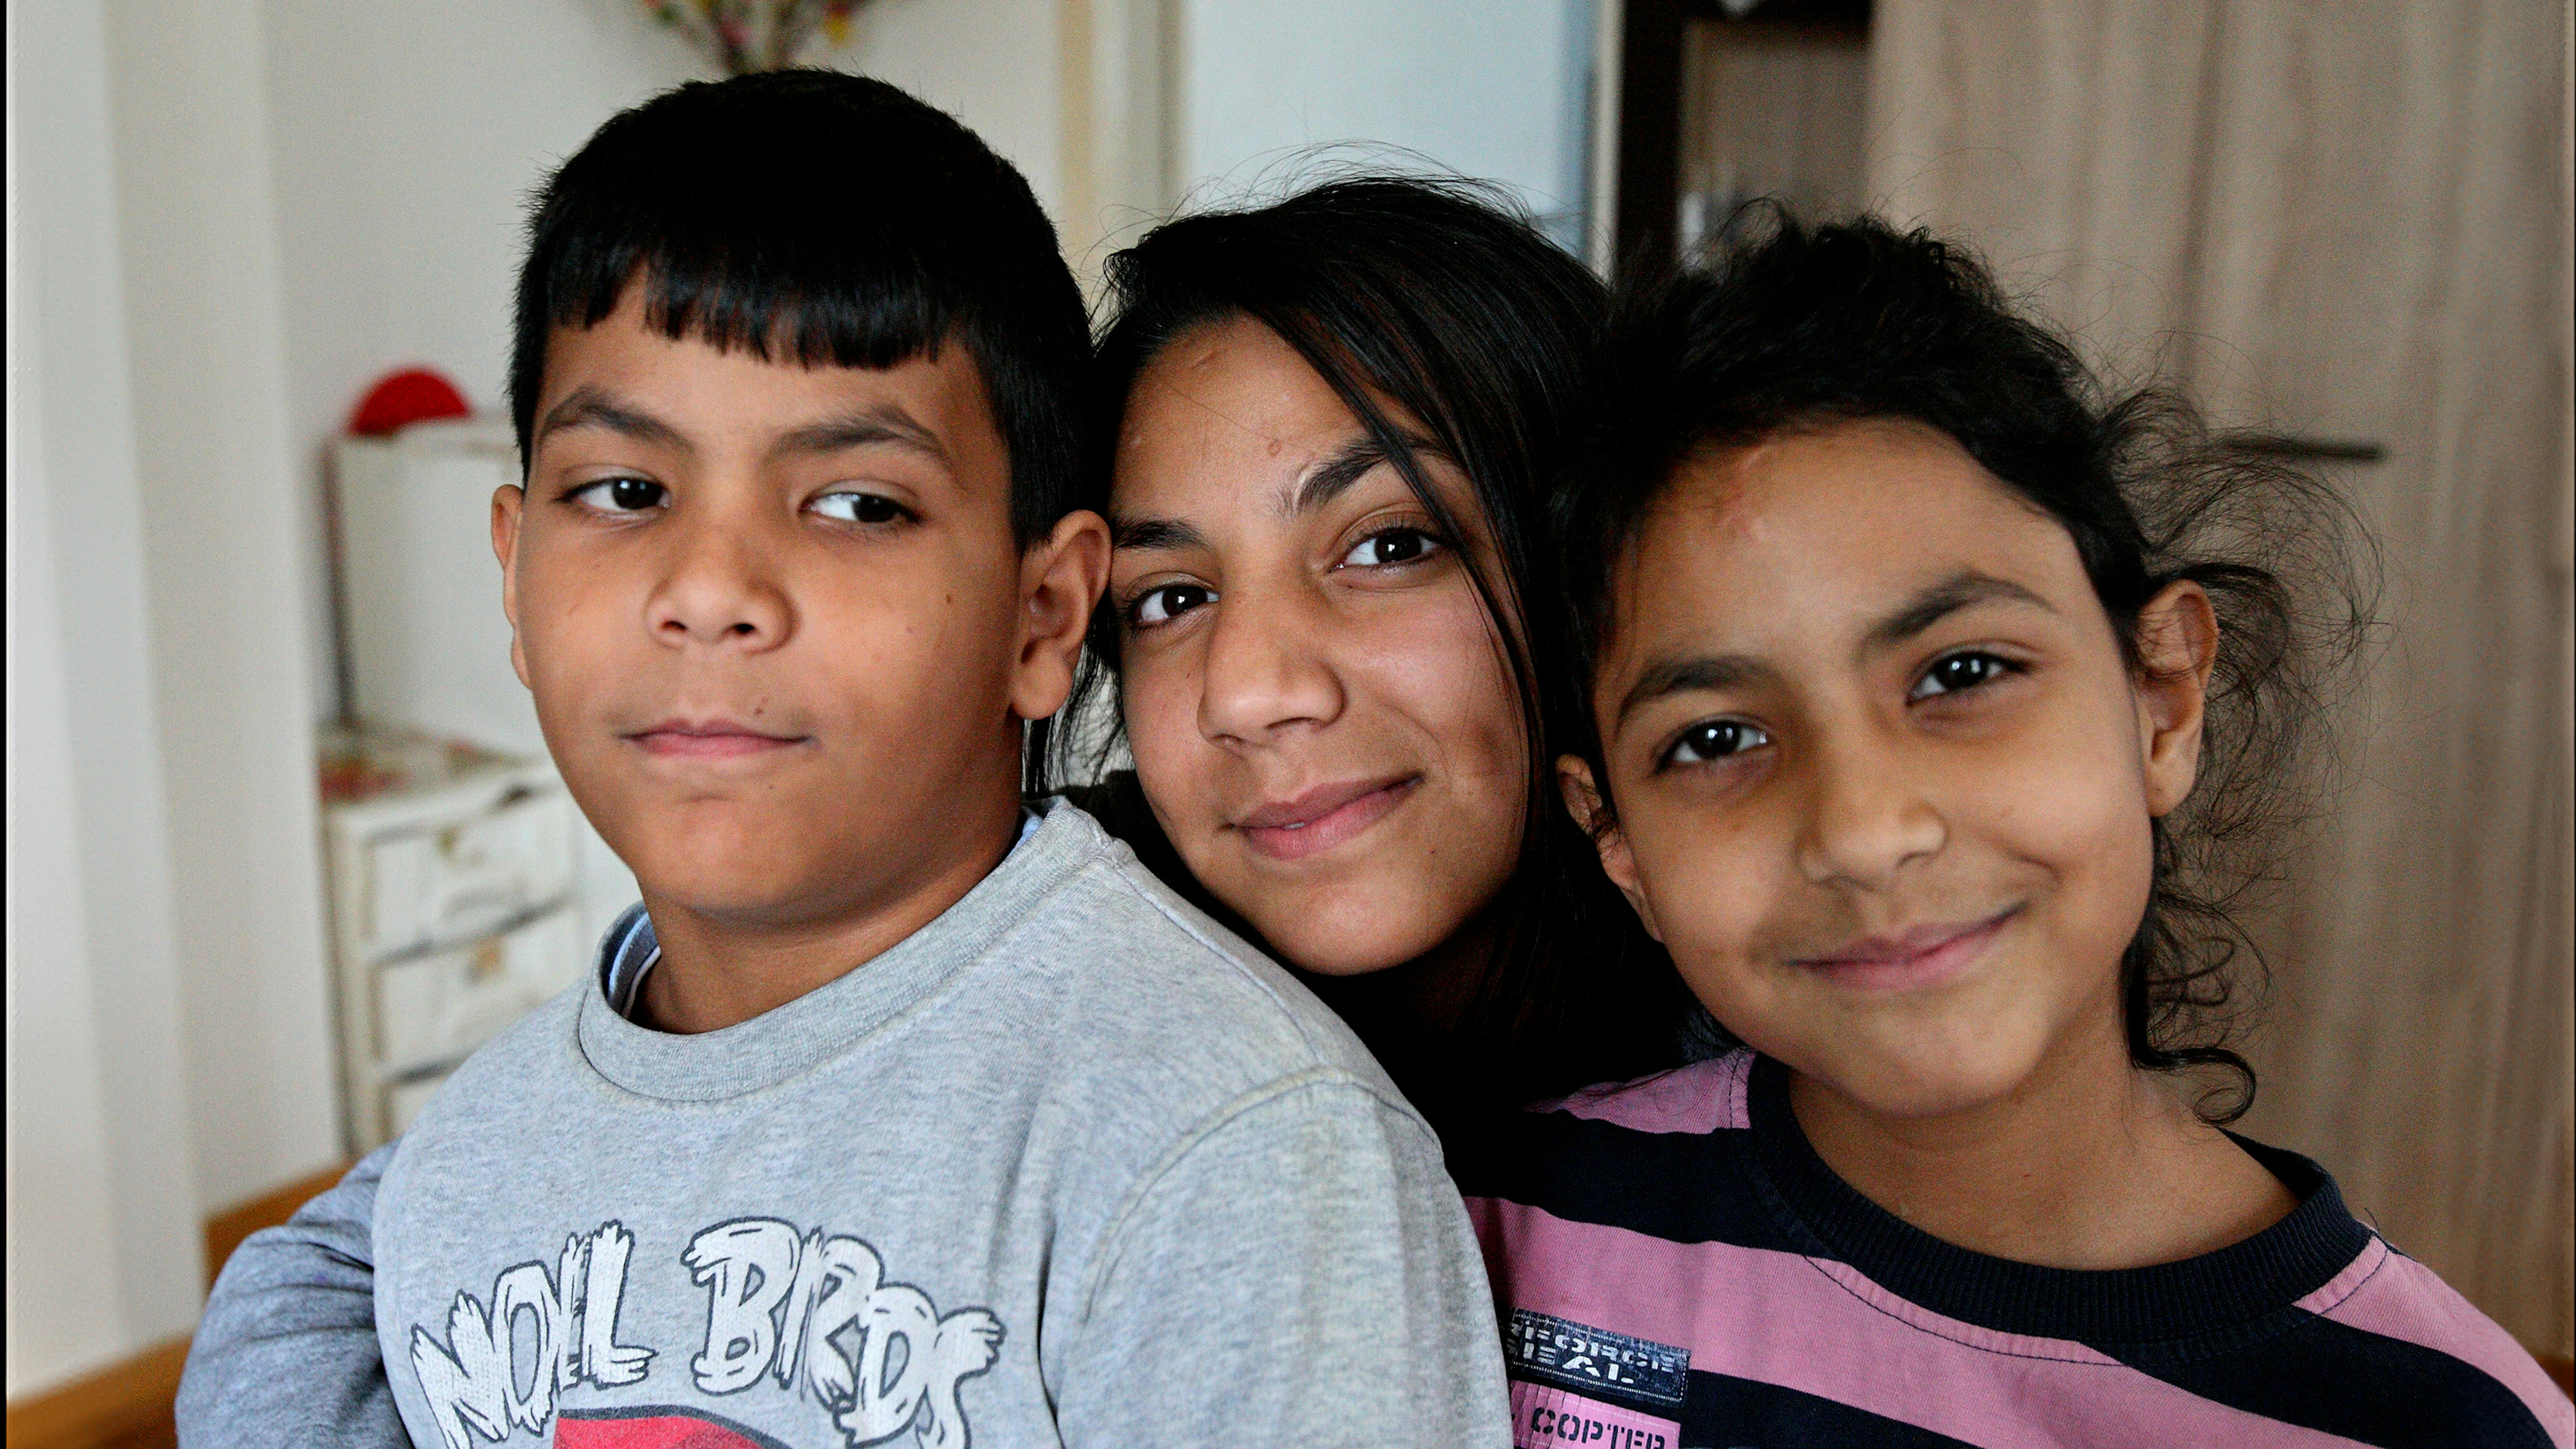 Serbia - Djevahire (13), Fatmire (9) e il figlio Gzim (8) nella loro casa a a Belgrado,